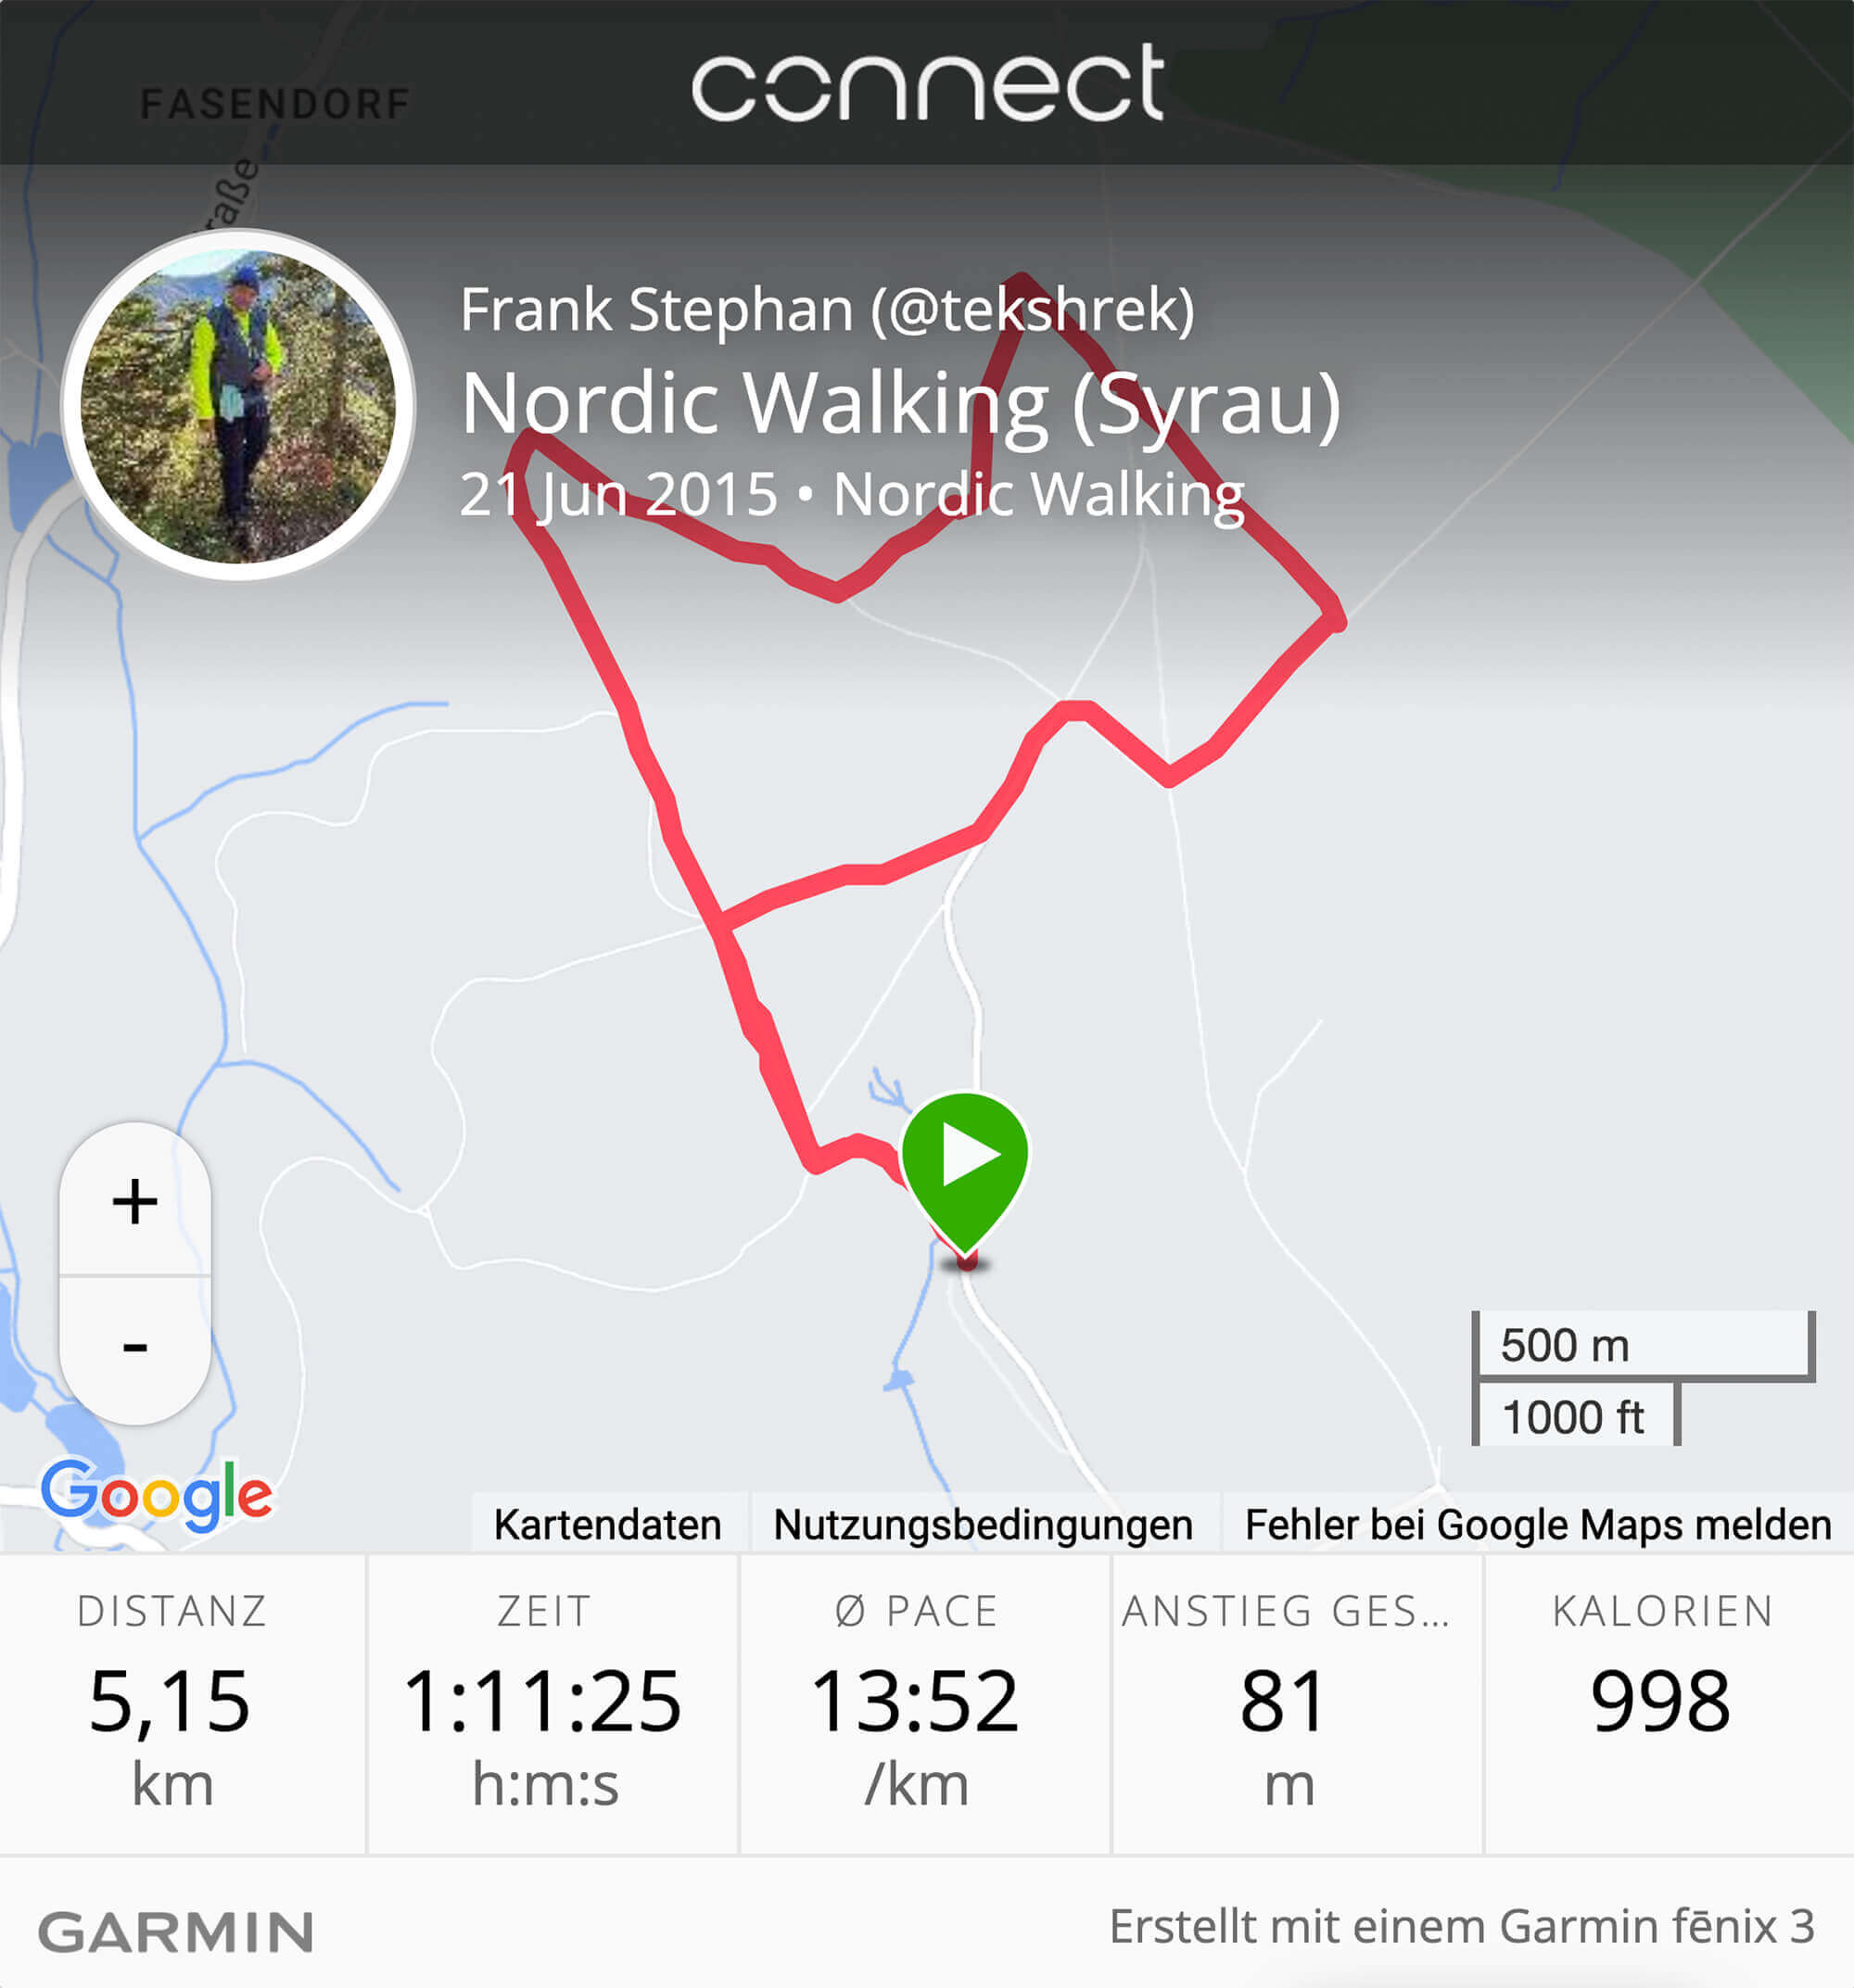 Garmin fēnix 3 (m)ein bester Freund und meine ersten 5 km beim Nordic Walking  im Schneckengrüner Wald bei Syrau